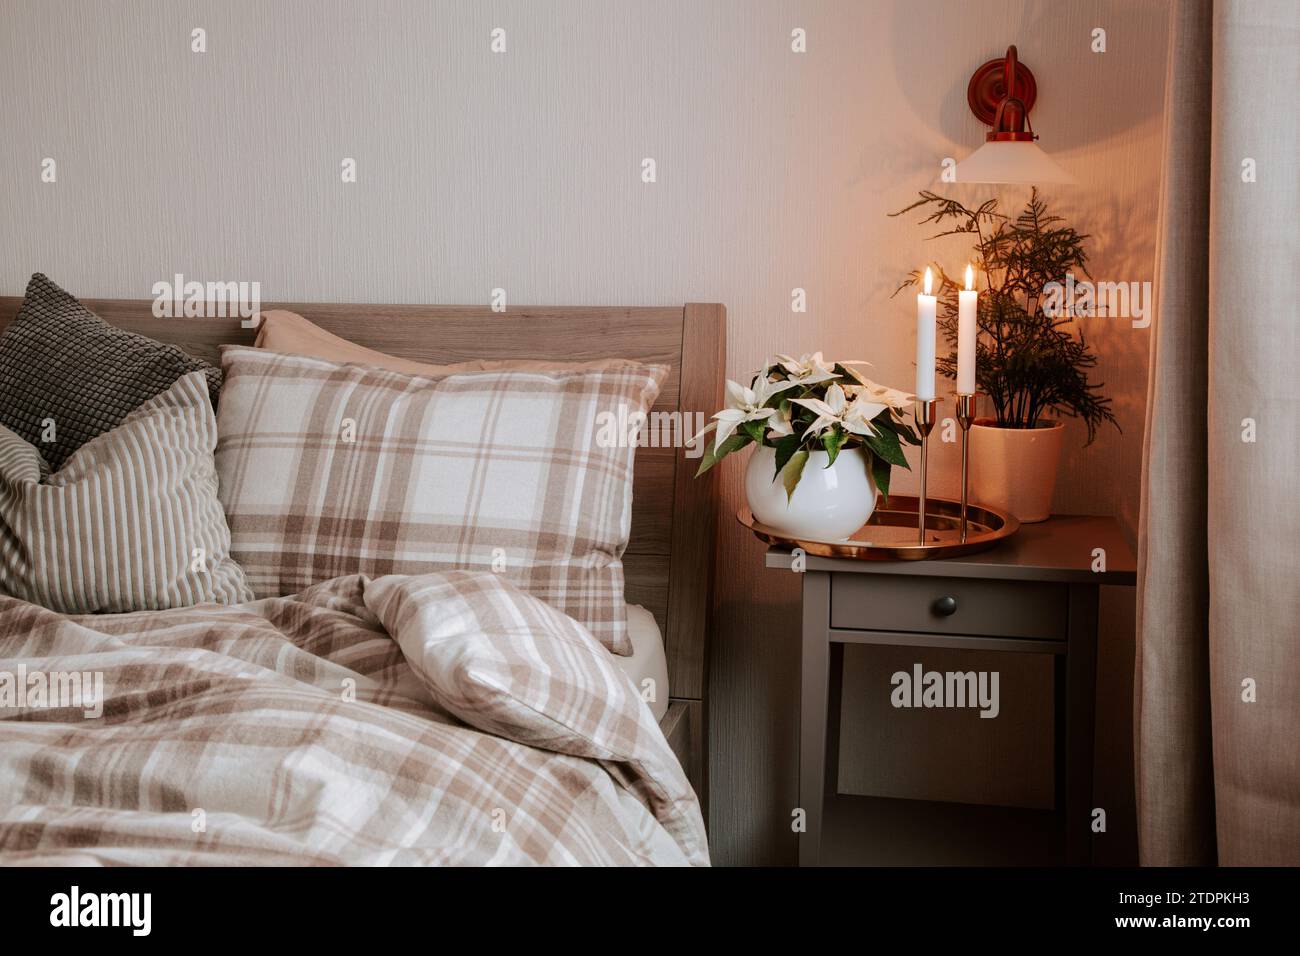 cozy scandinavian bedroom interior in natural tones, blanket candles houseplants Stock Photo